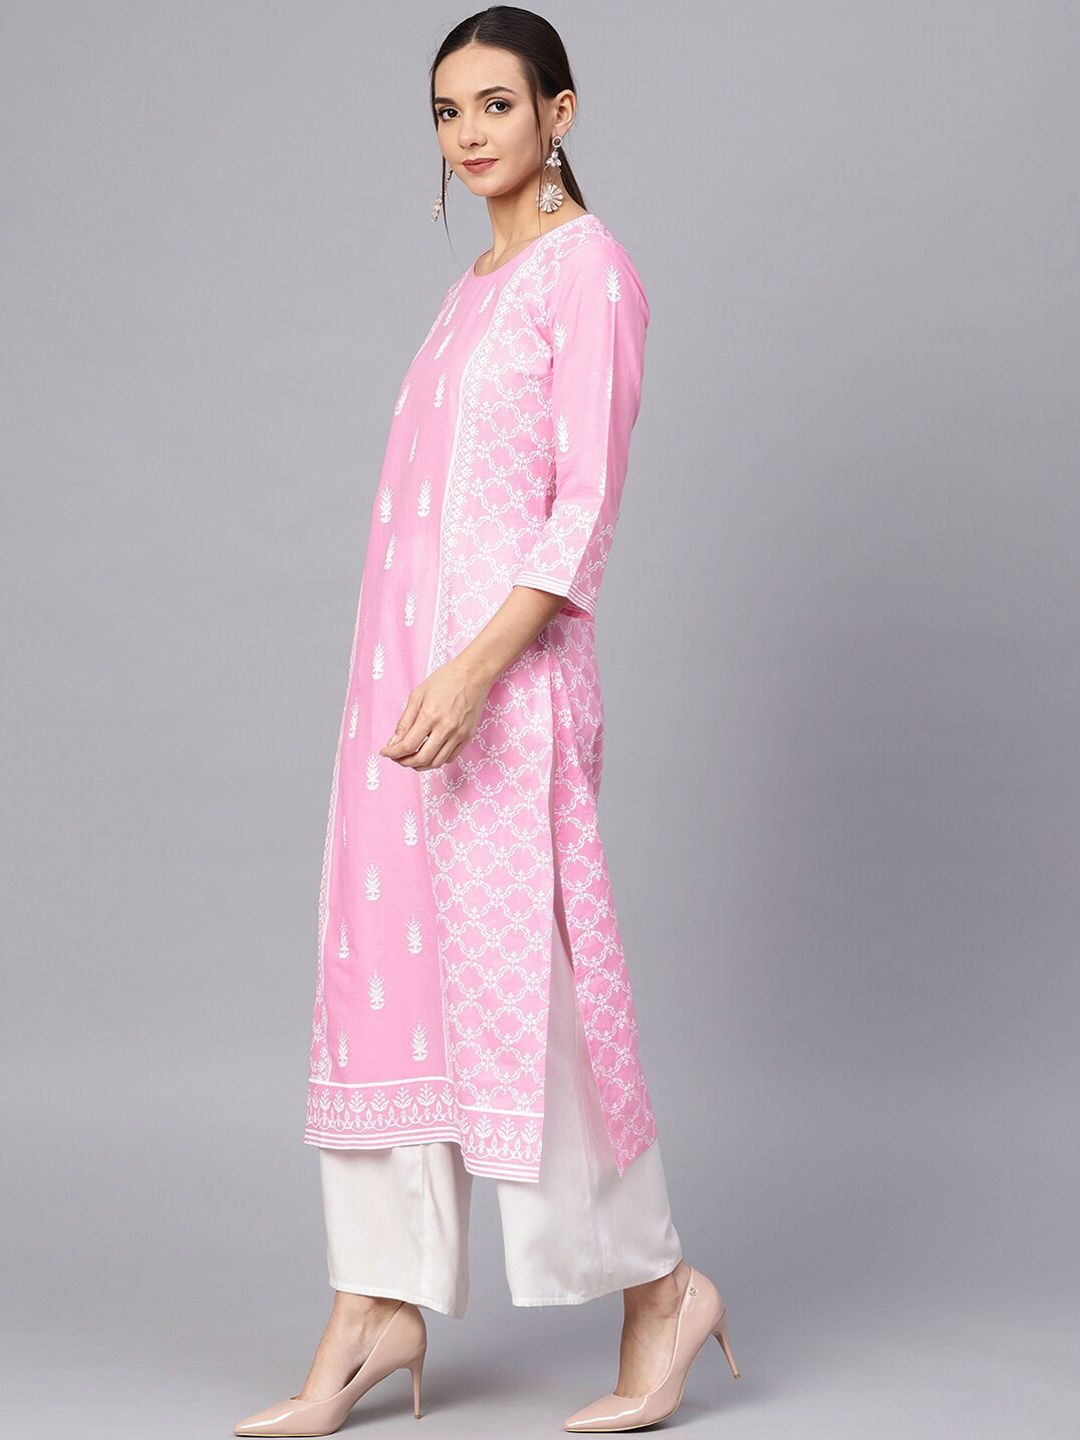 Varanga Women Pink Ethnic Motifs Block Print Cotton Kurta Price in India